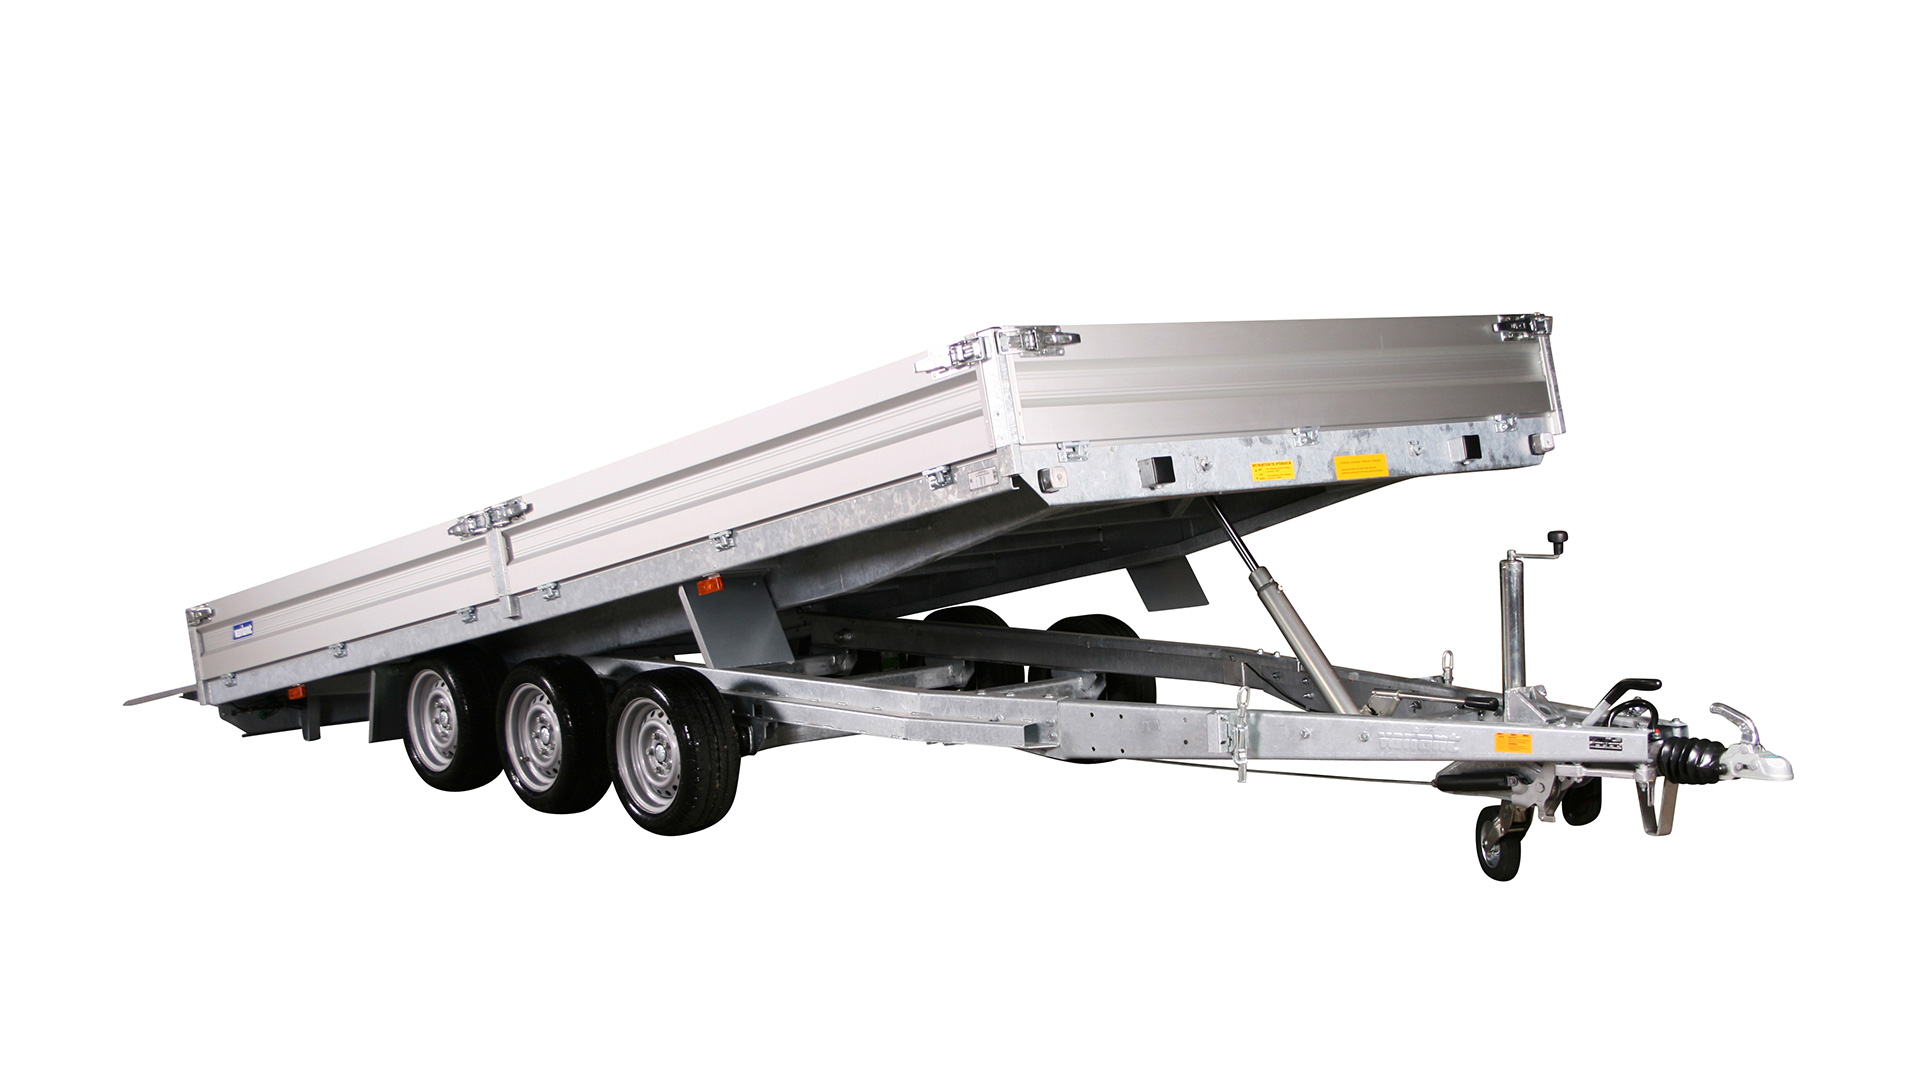 Variant PKW Anhänger Universaltransporter 3500 U5 - kippbar3500 kg, Ladefläche 5,20 x 2,10 m Tridem mit Bordwände